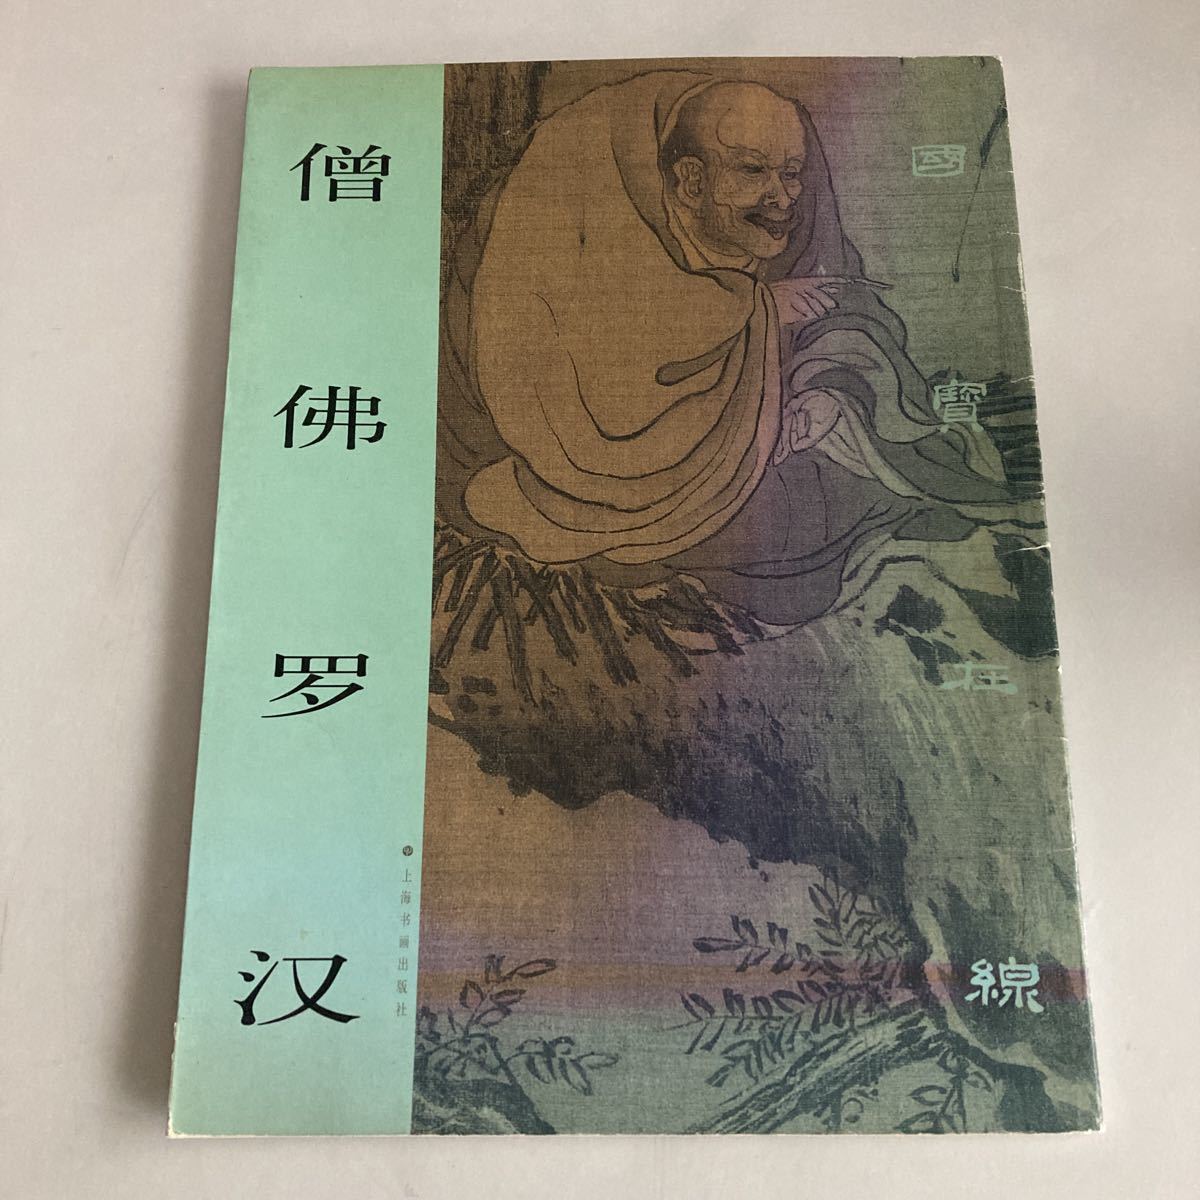 ◇ Tesoros nacionales en línea Monje Buda Arhat Monje Buda Apreciación del arte chino y la pintura china ♪GM01, Cuadro, Libro de arte, Recopilación, otros